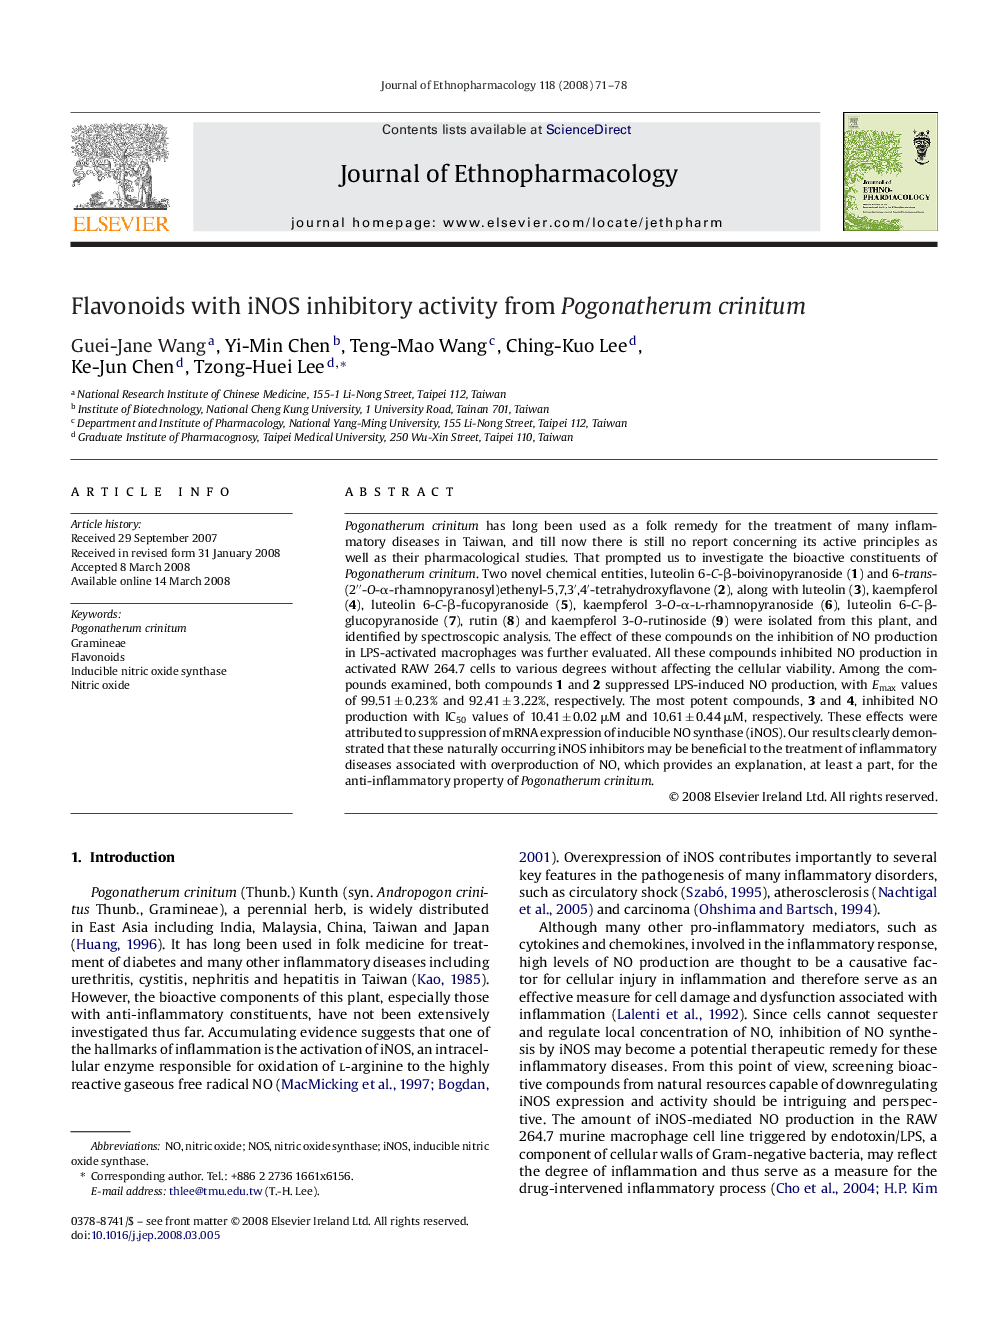 Flavonoids with iNOS inhibitory activity from Pogonatherum crinitum